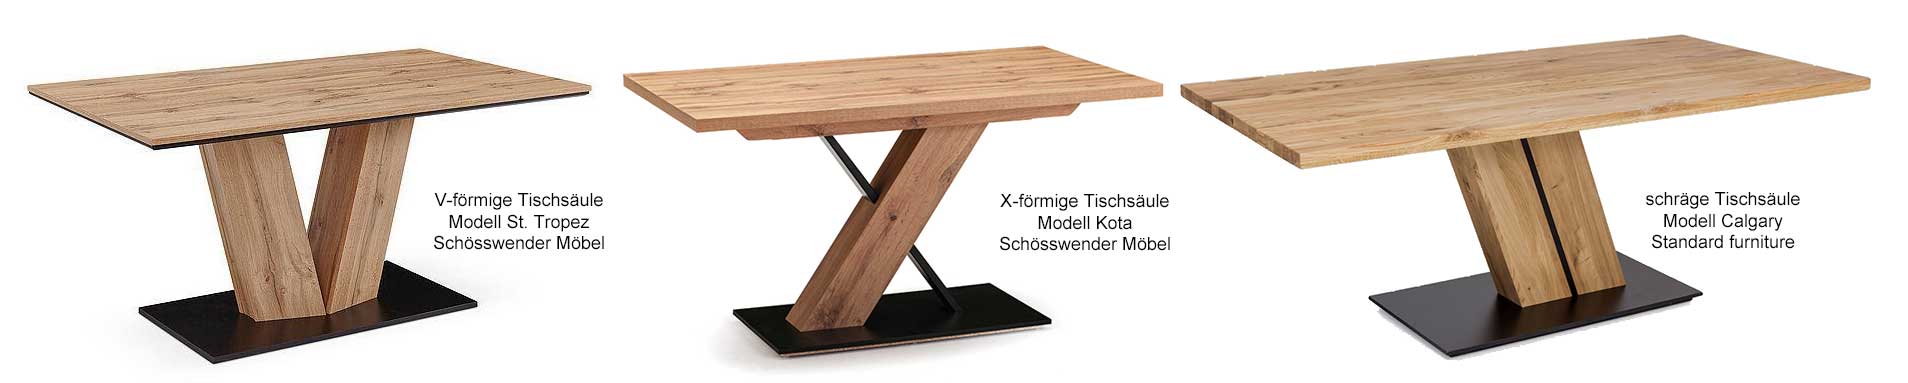 Formen moderner Tischsäulen